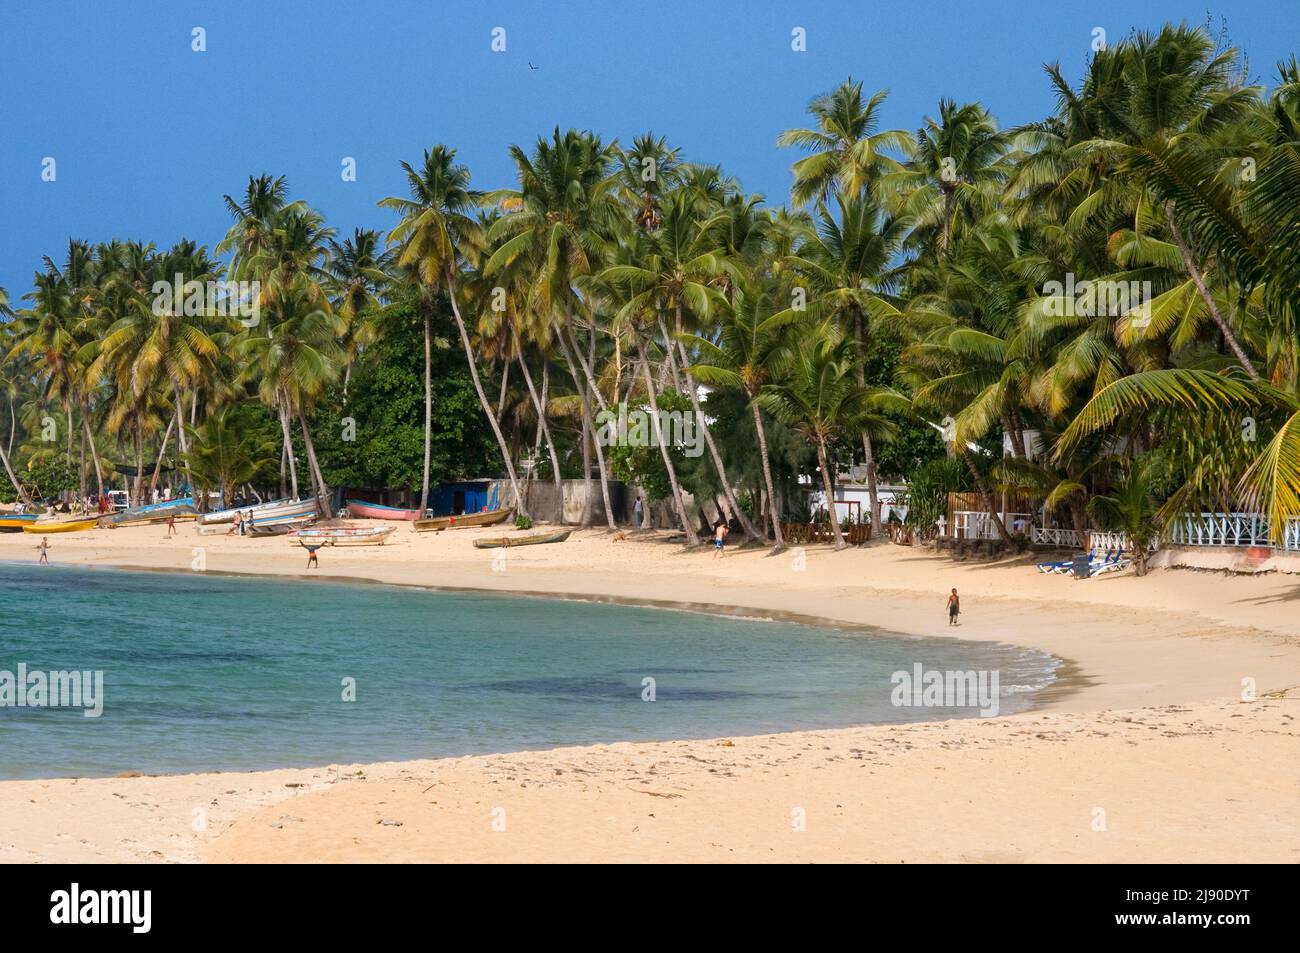 Playa Las Terrenas, Samaná, República Dominicana, Caribe, América. Playa tropical caribeña con palmeras de coco. Esta playa de arena blanca se extiende Foto de stock